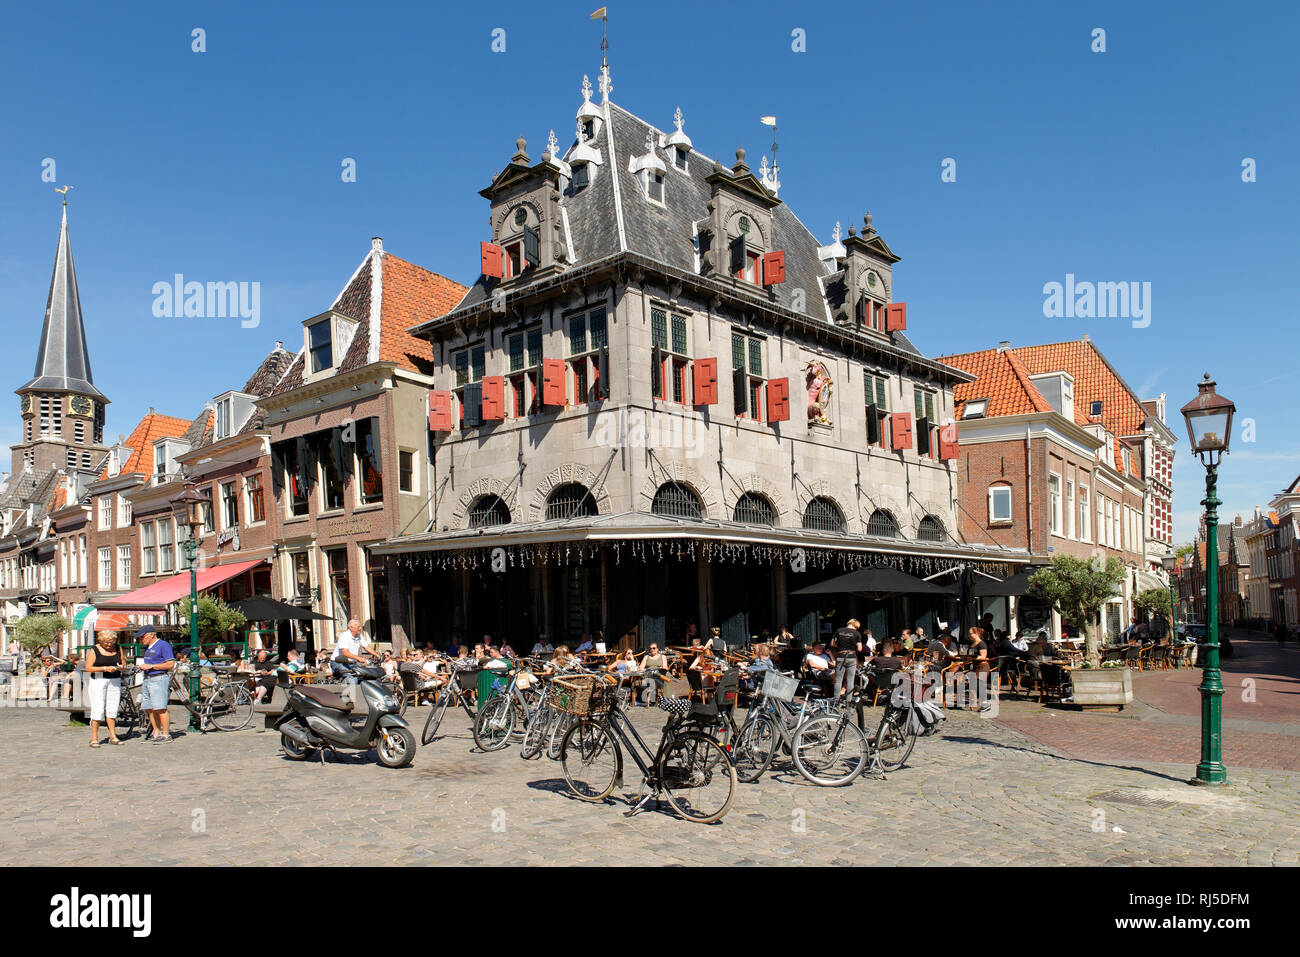 Restaurant, ehemalige historische Käsewaage, De Roode Steen Platz, Hoorn, Noord-Holland, Ijsselmeer, Niederlande Stock Photo